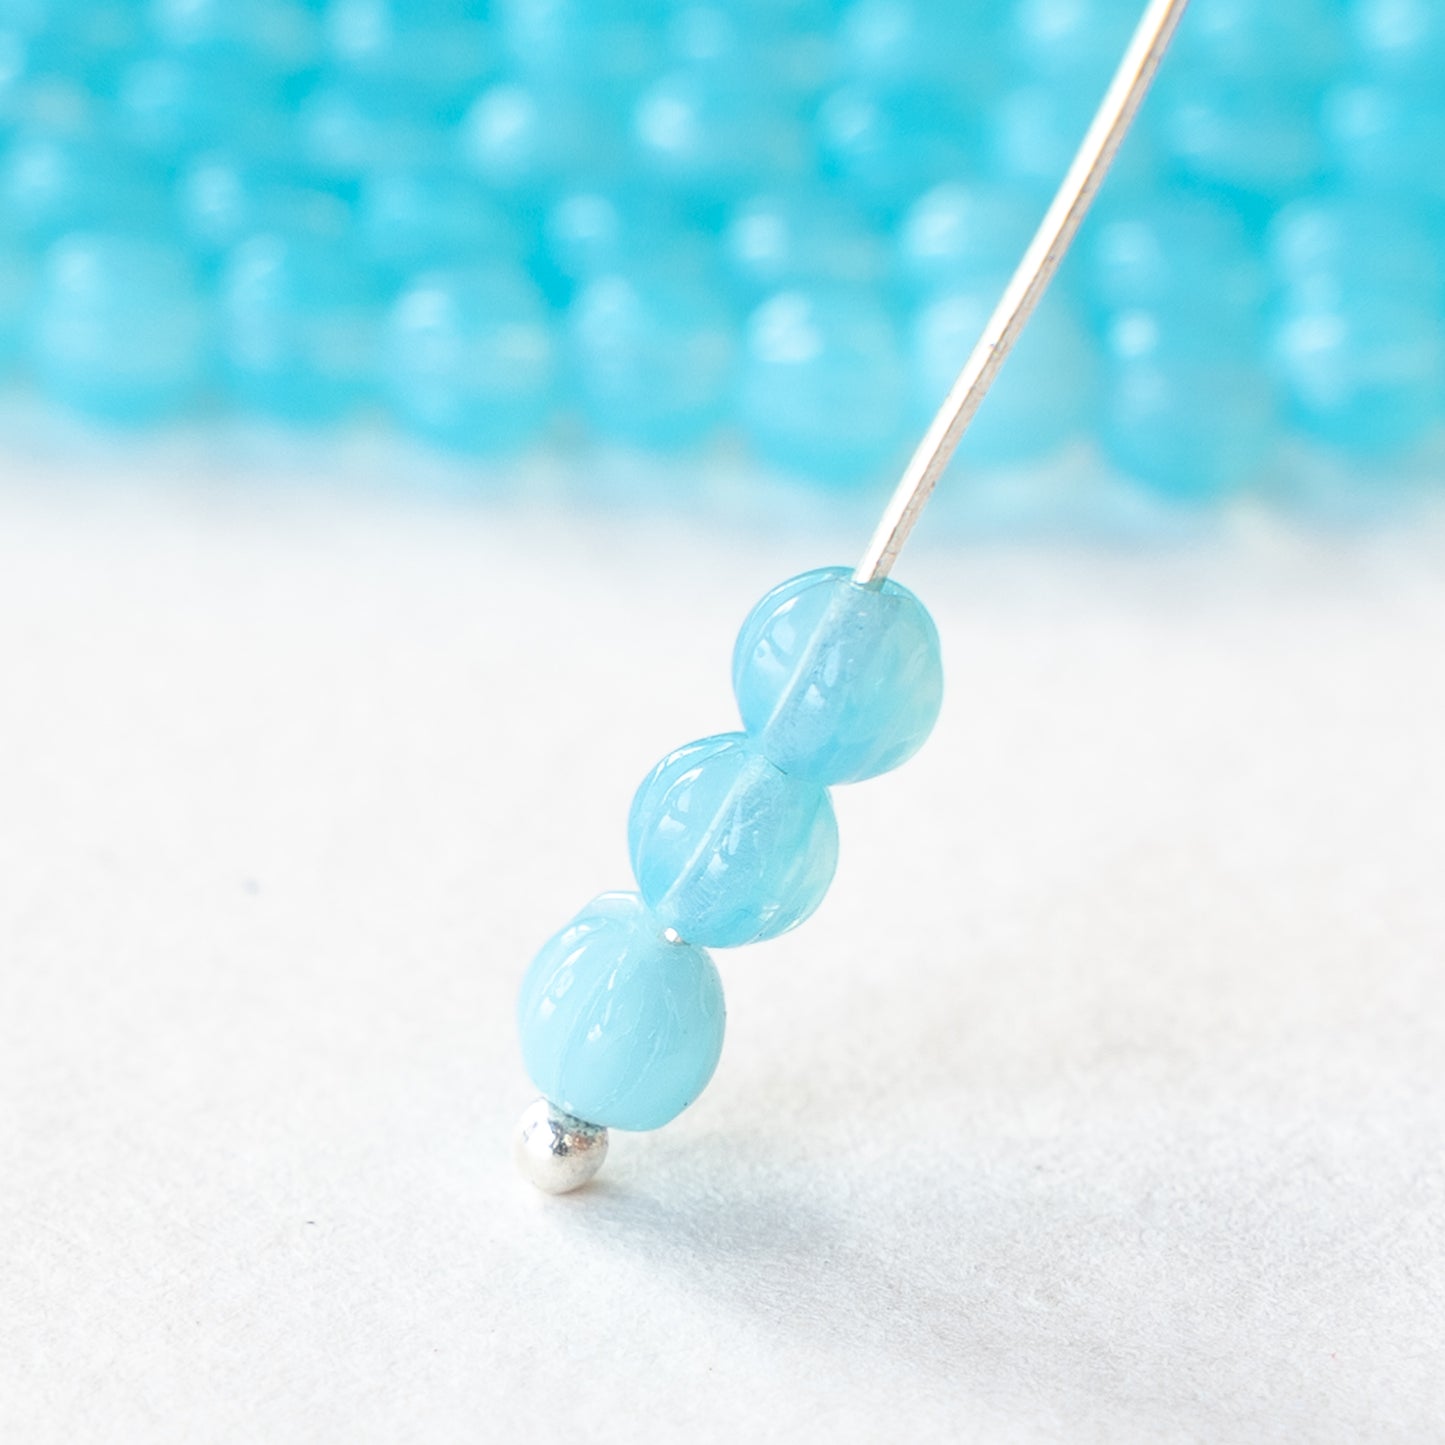 4mm Glass Melon Beads - Baby Blue Opaline - 58 beads